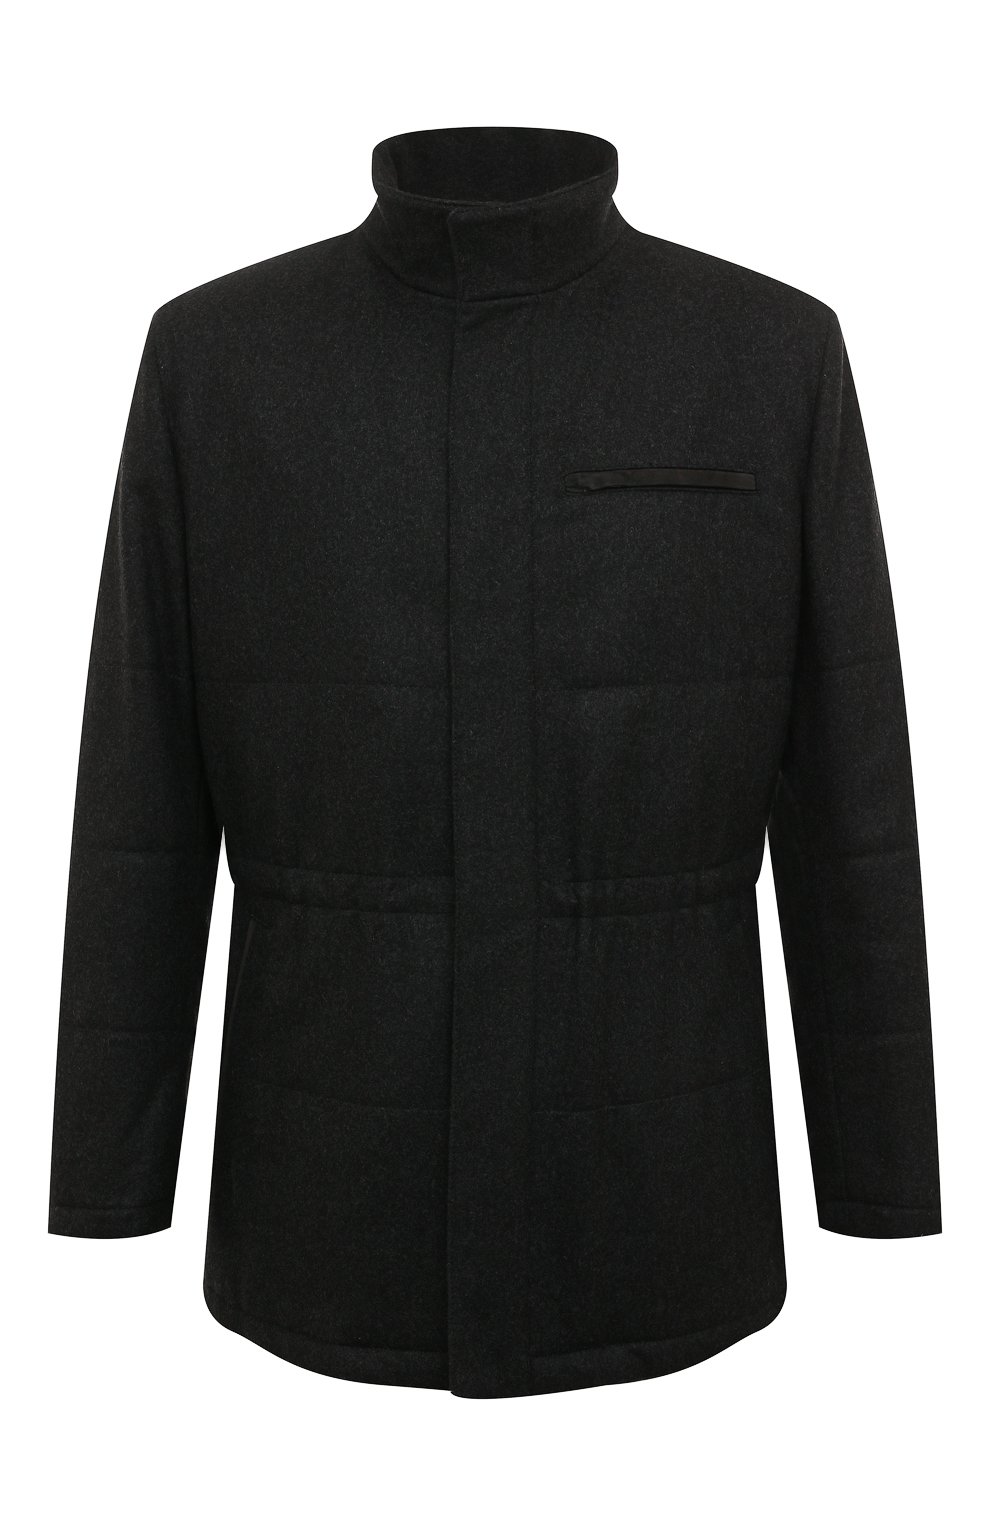 Мужская кашемировая куртка KITON темно-серого цвета, арт. UW0608MV03S04 | Фото 1 (Кросс-КТ: Куртка; Мужское Кросс-КТ: шерсть и кашемир, Верхняя одежда; Материал внешний: Шерсть, Кашемир; Рукава: Длинные; Длина (верхняя одежда): До середины бедра; Материал подклада: Синтетический материал; Статус проверки: Проверена категория)